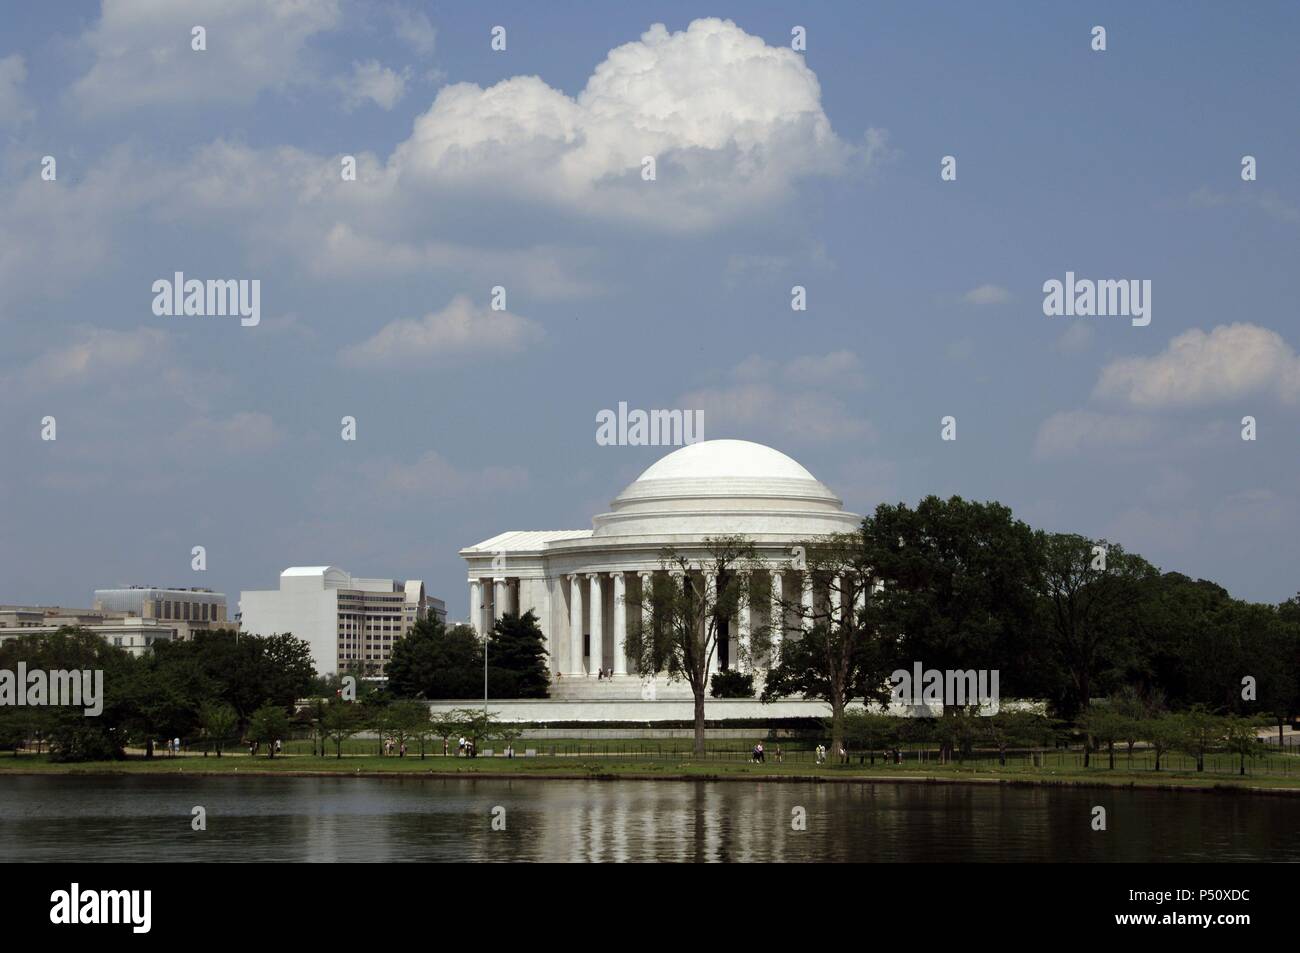 In den Vereinigten Staaten. Washington D.C. Thomas Jefferson Memorial. 3 Präsident und einer der Gründerväter der Vereinigten Staaten (1743-1826). Hauptverfasser der Erklärung der Unabhängigkeit (1776). Stockfoto